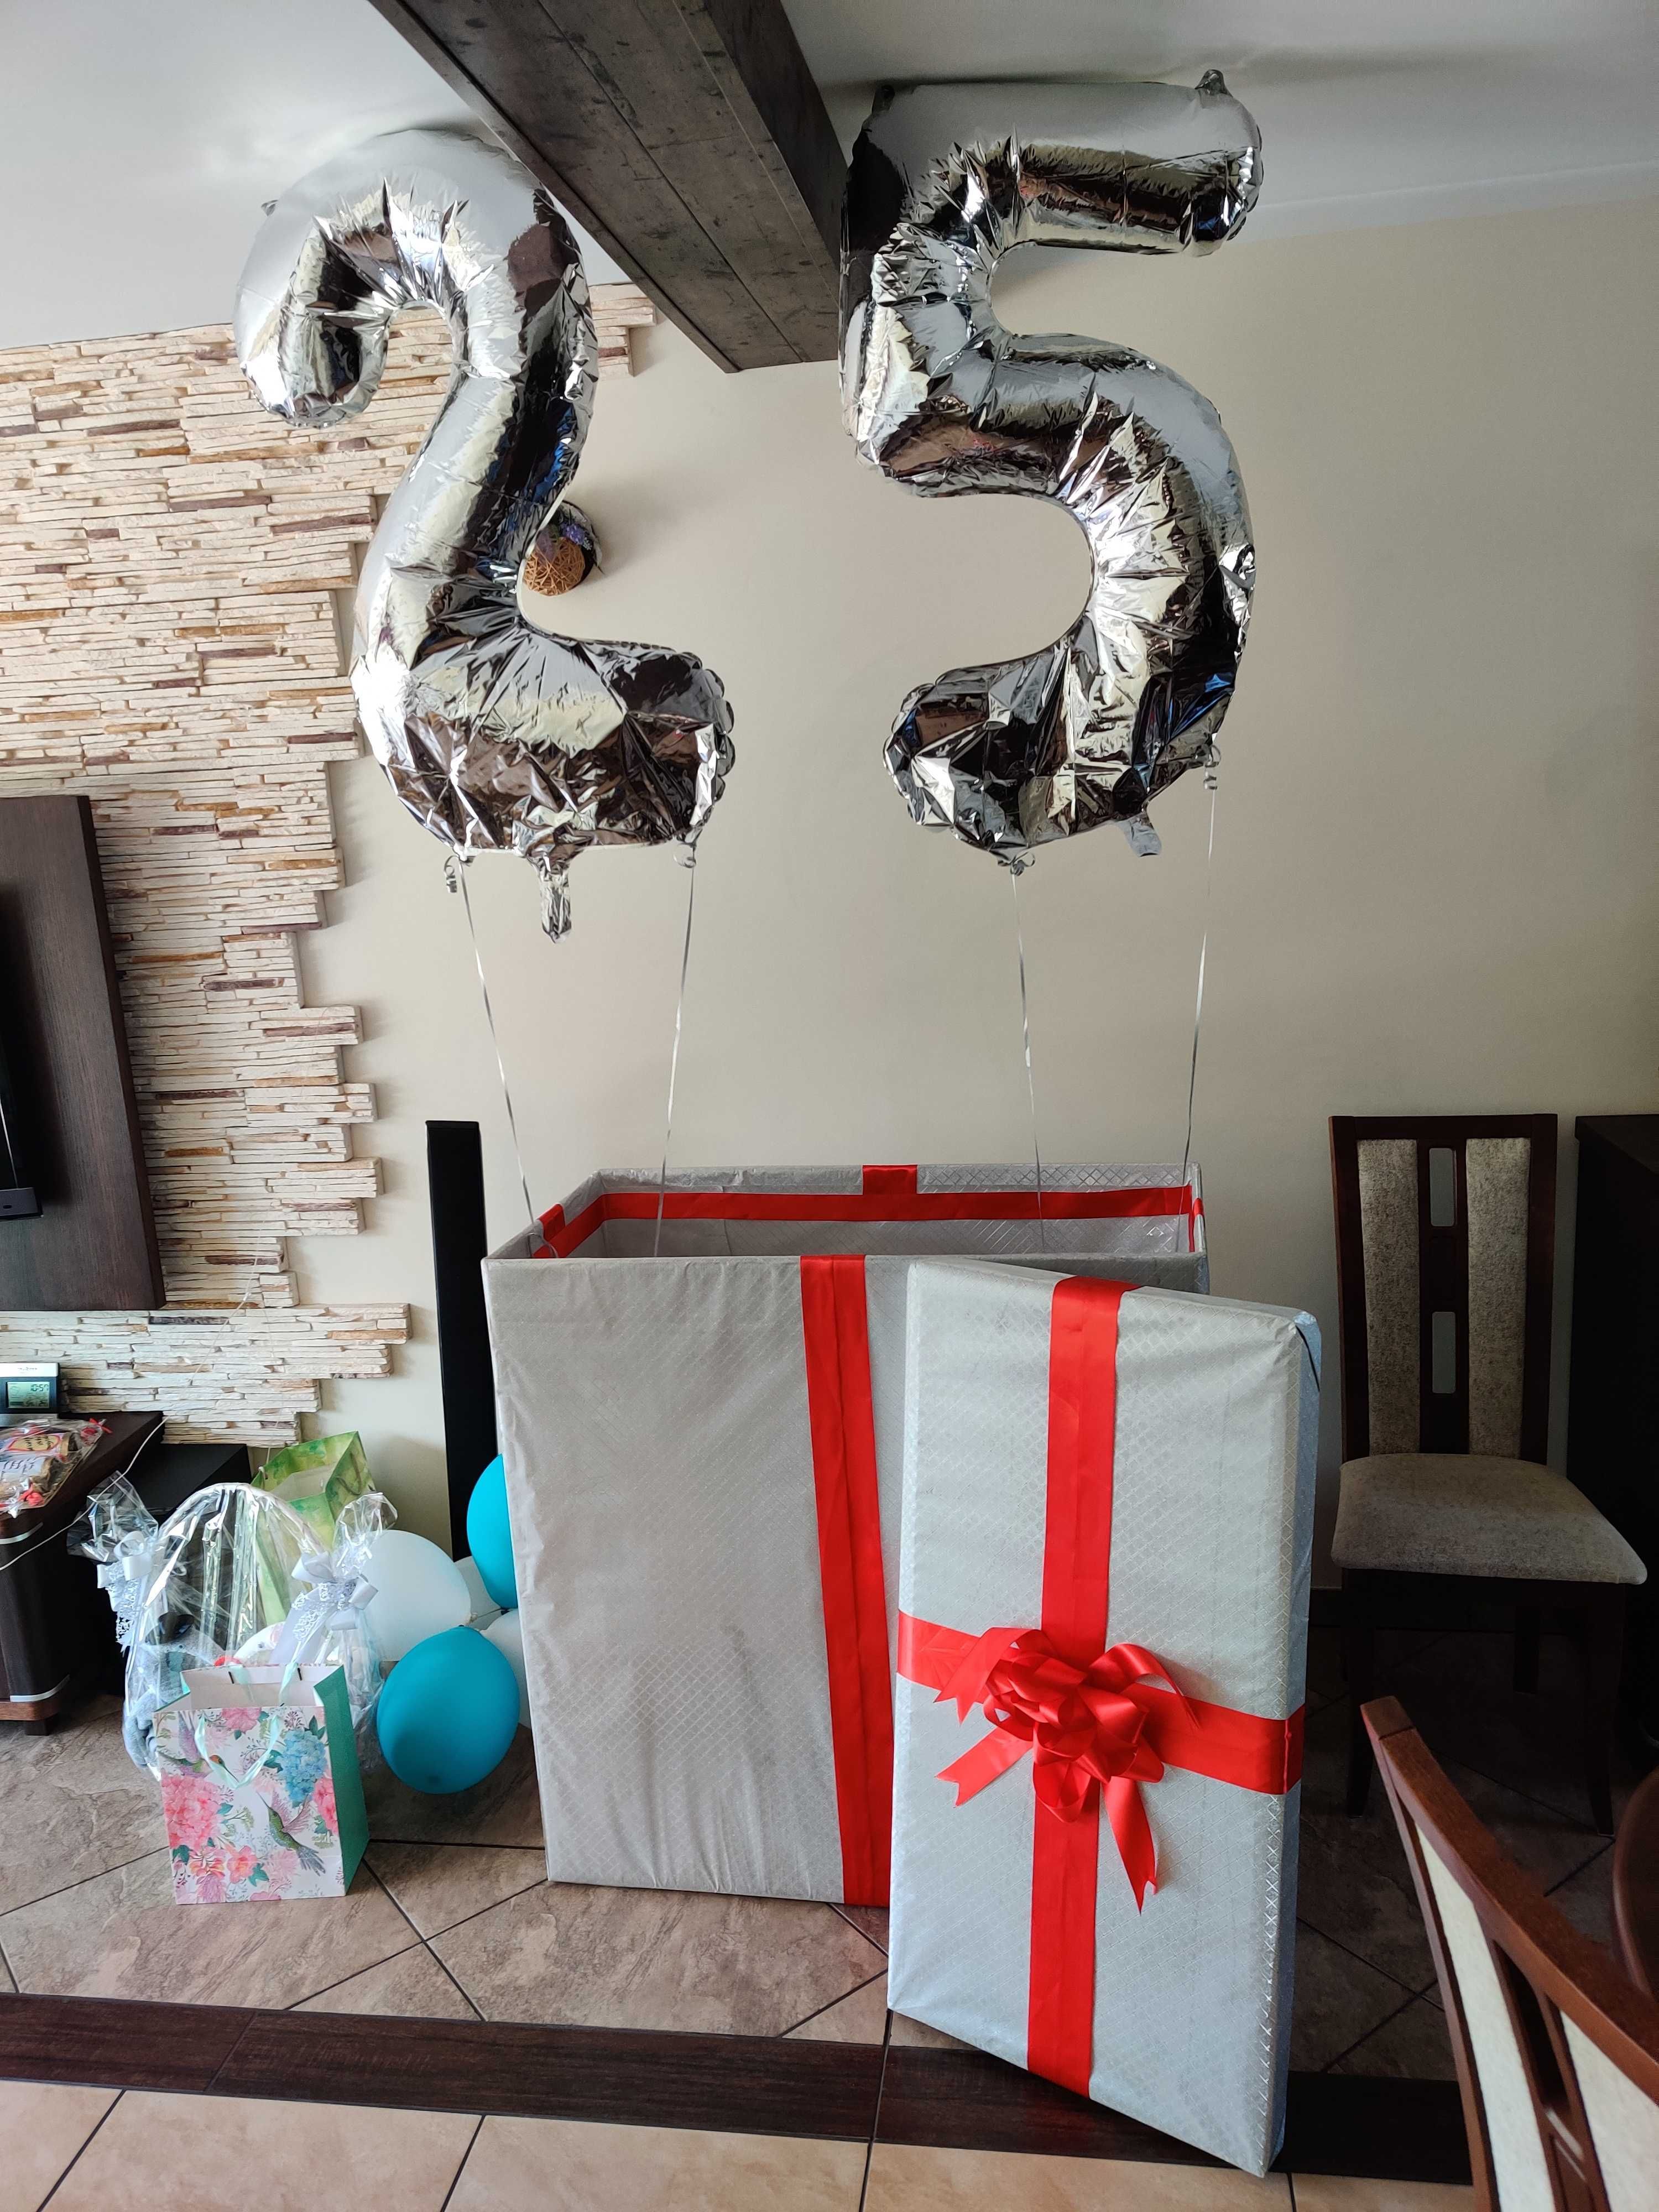 pudełko prezentowe karton prezent pudło duże ślub rocznica